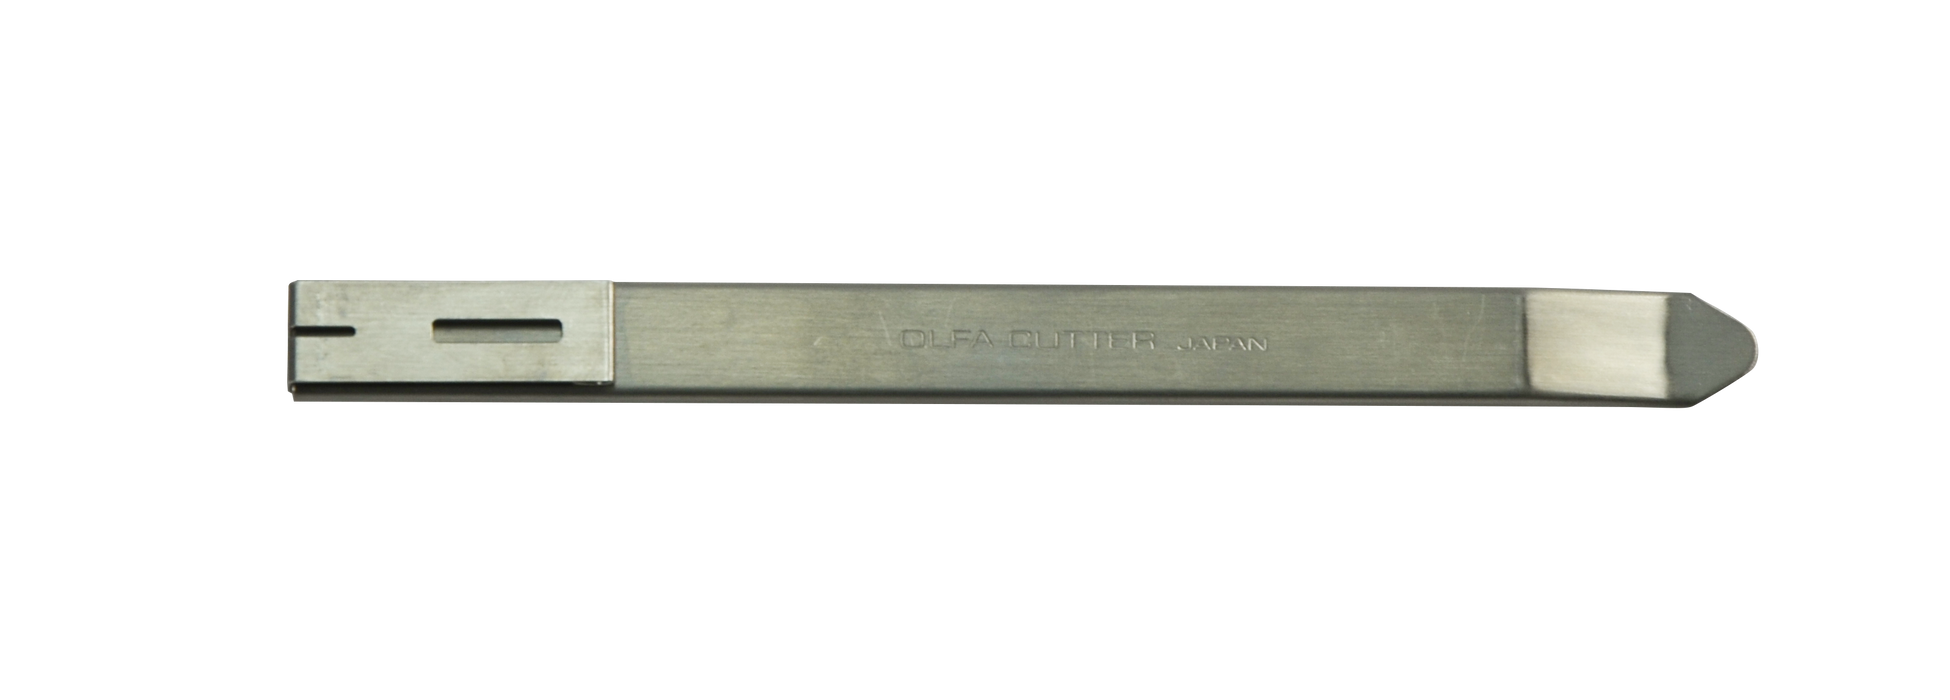 Olfa SAC-1 brytbladskniv för 9mm 30° blad